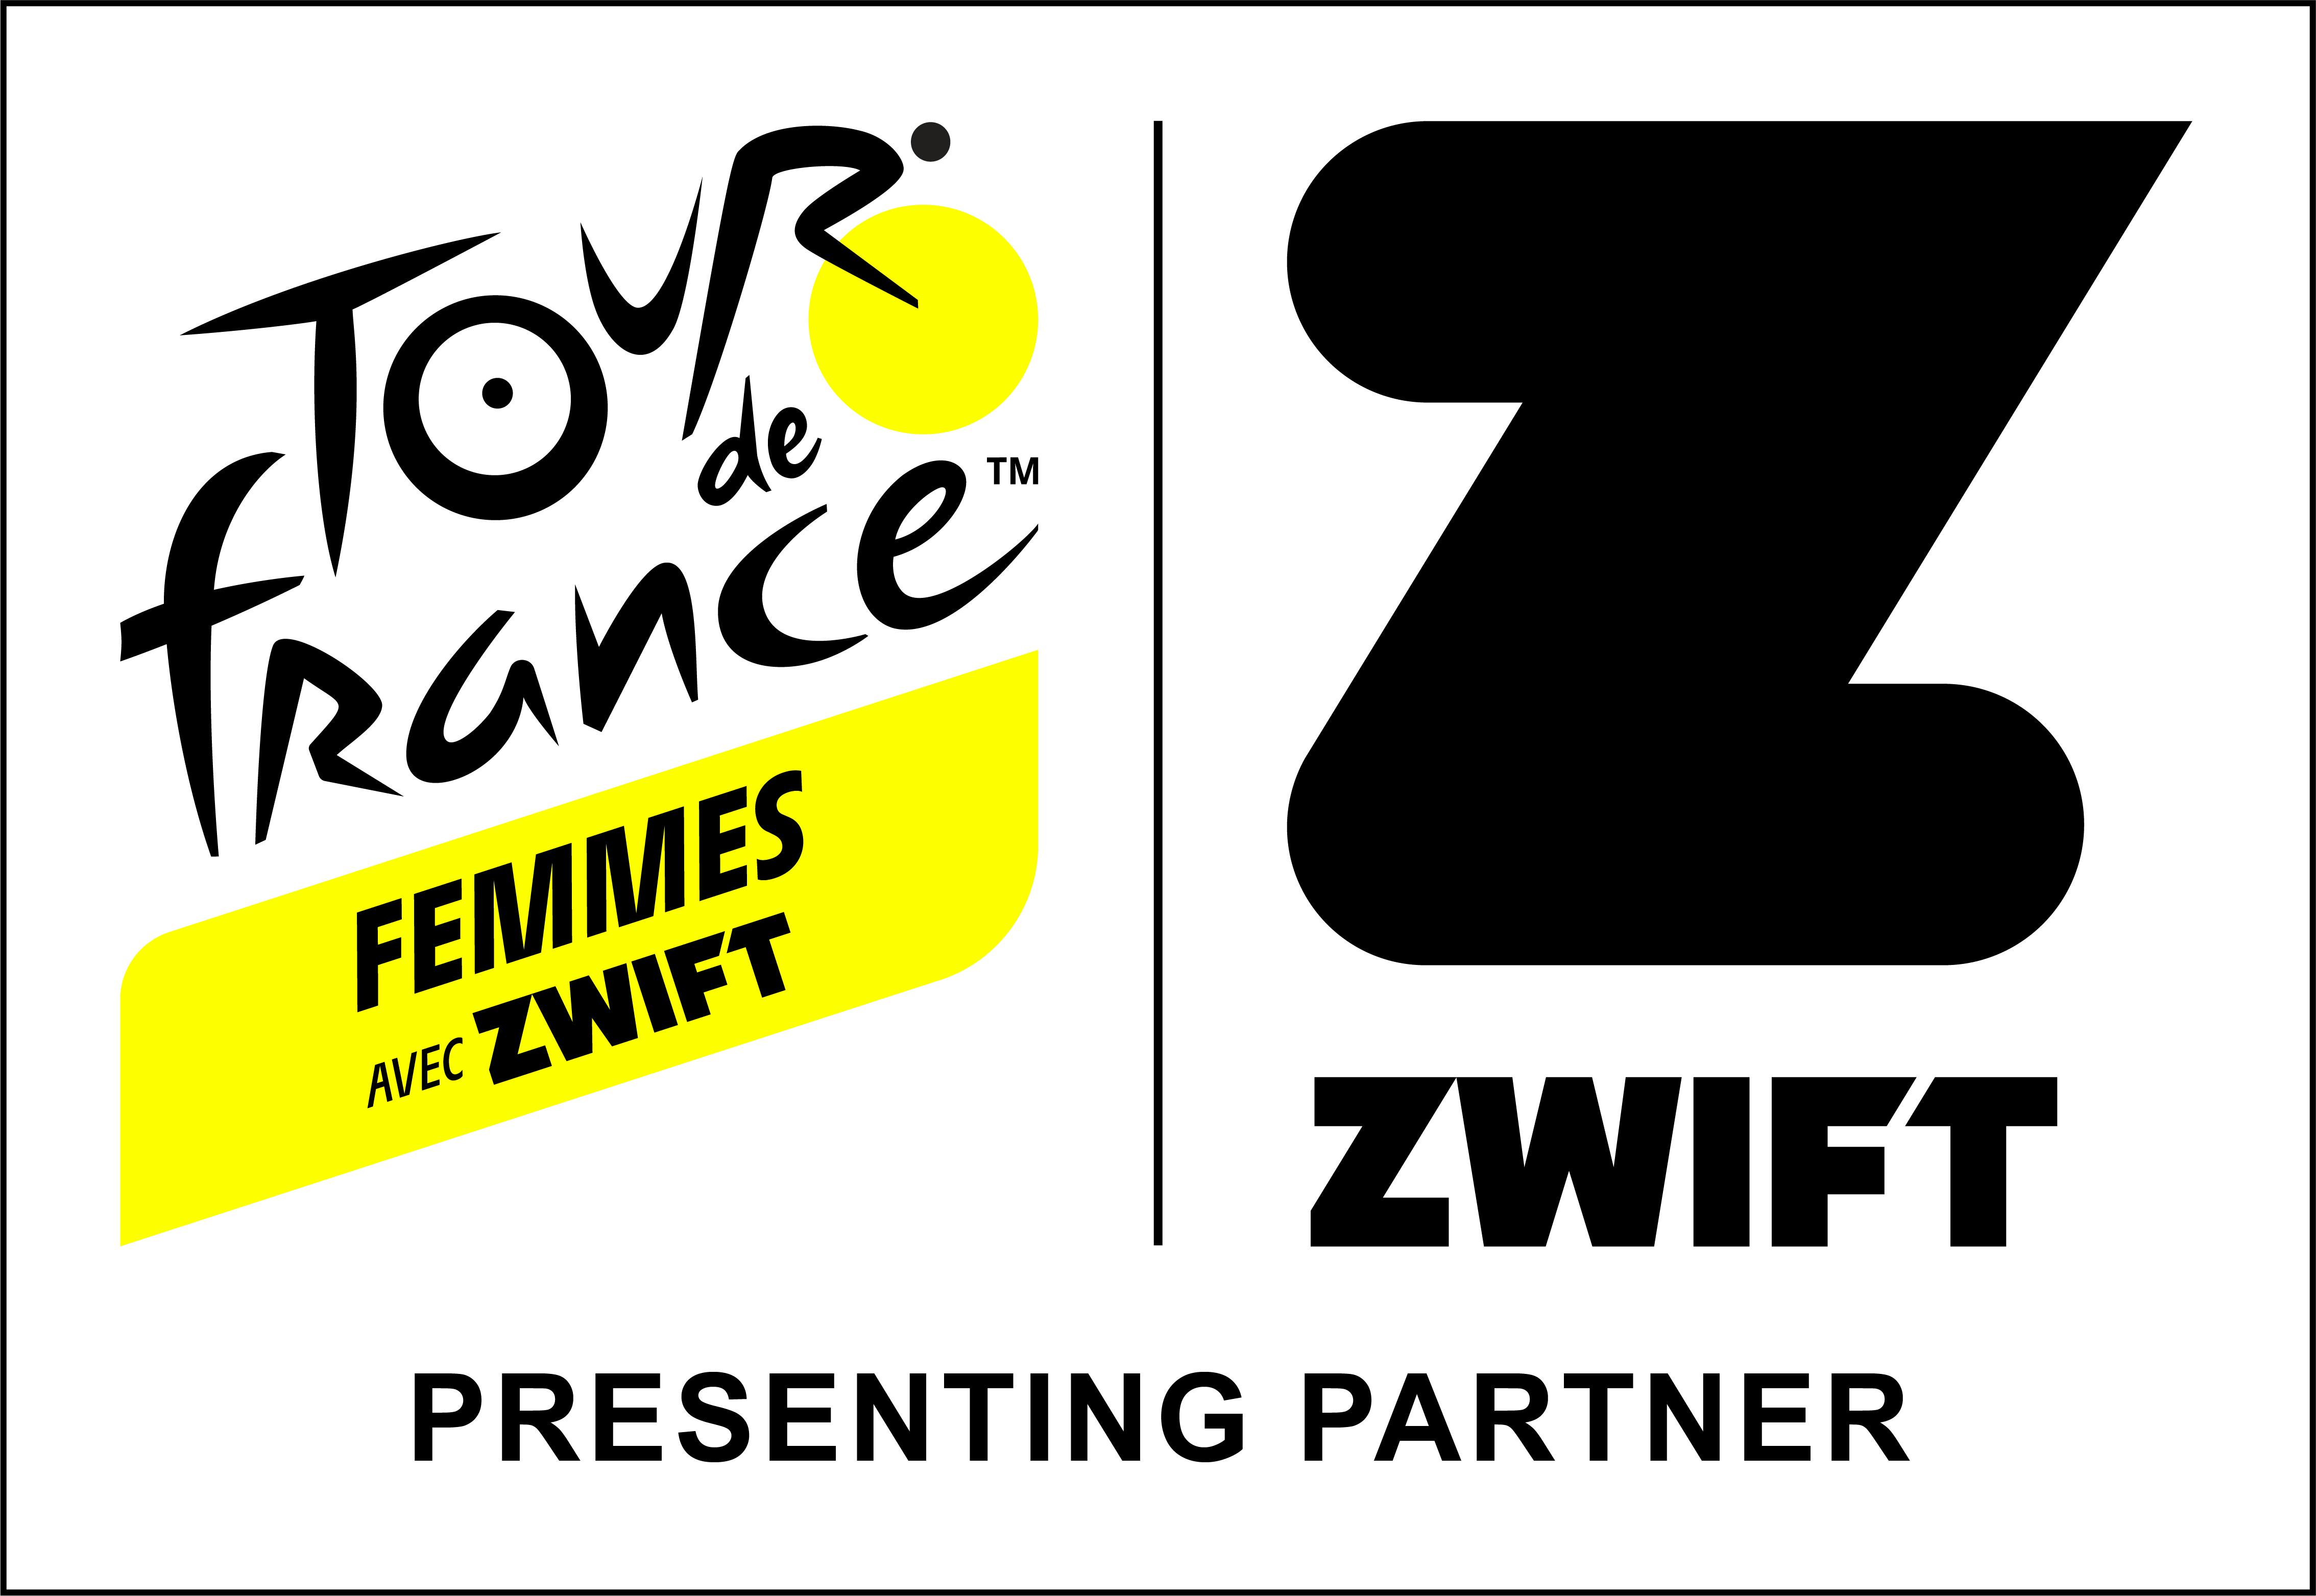 ZWIFTが「TOUR DE FRANCE FEMMES AVEC ZWIFT」
の提供パートナーとなります